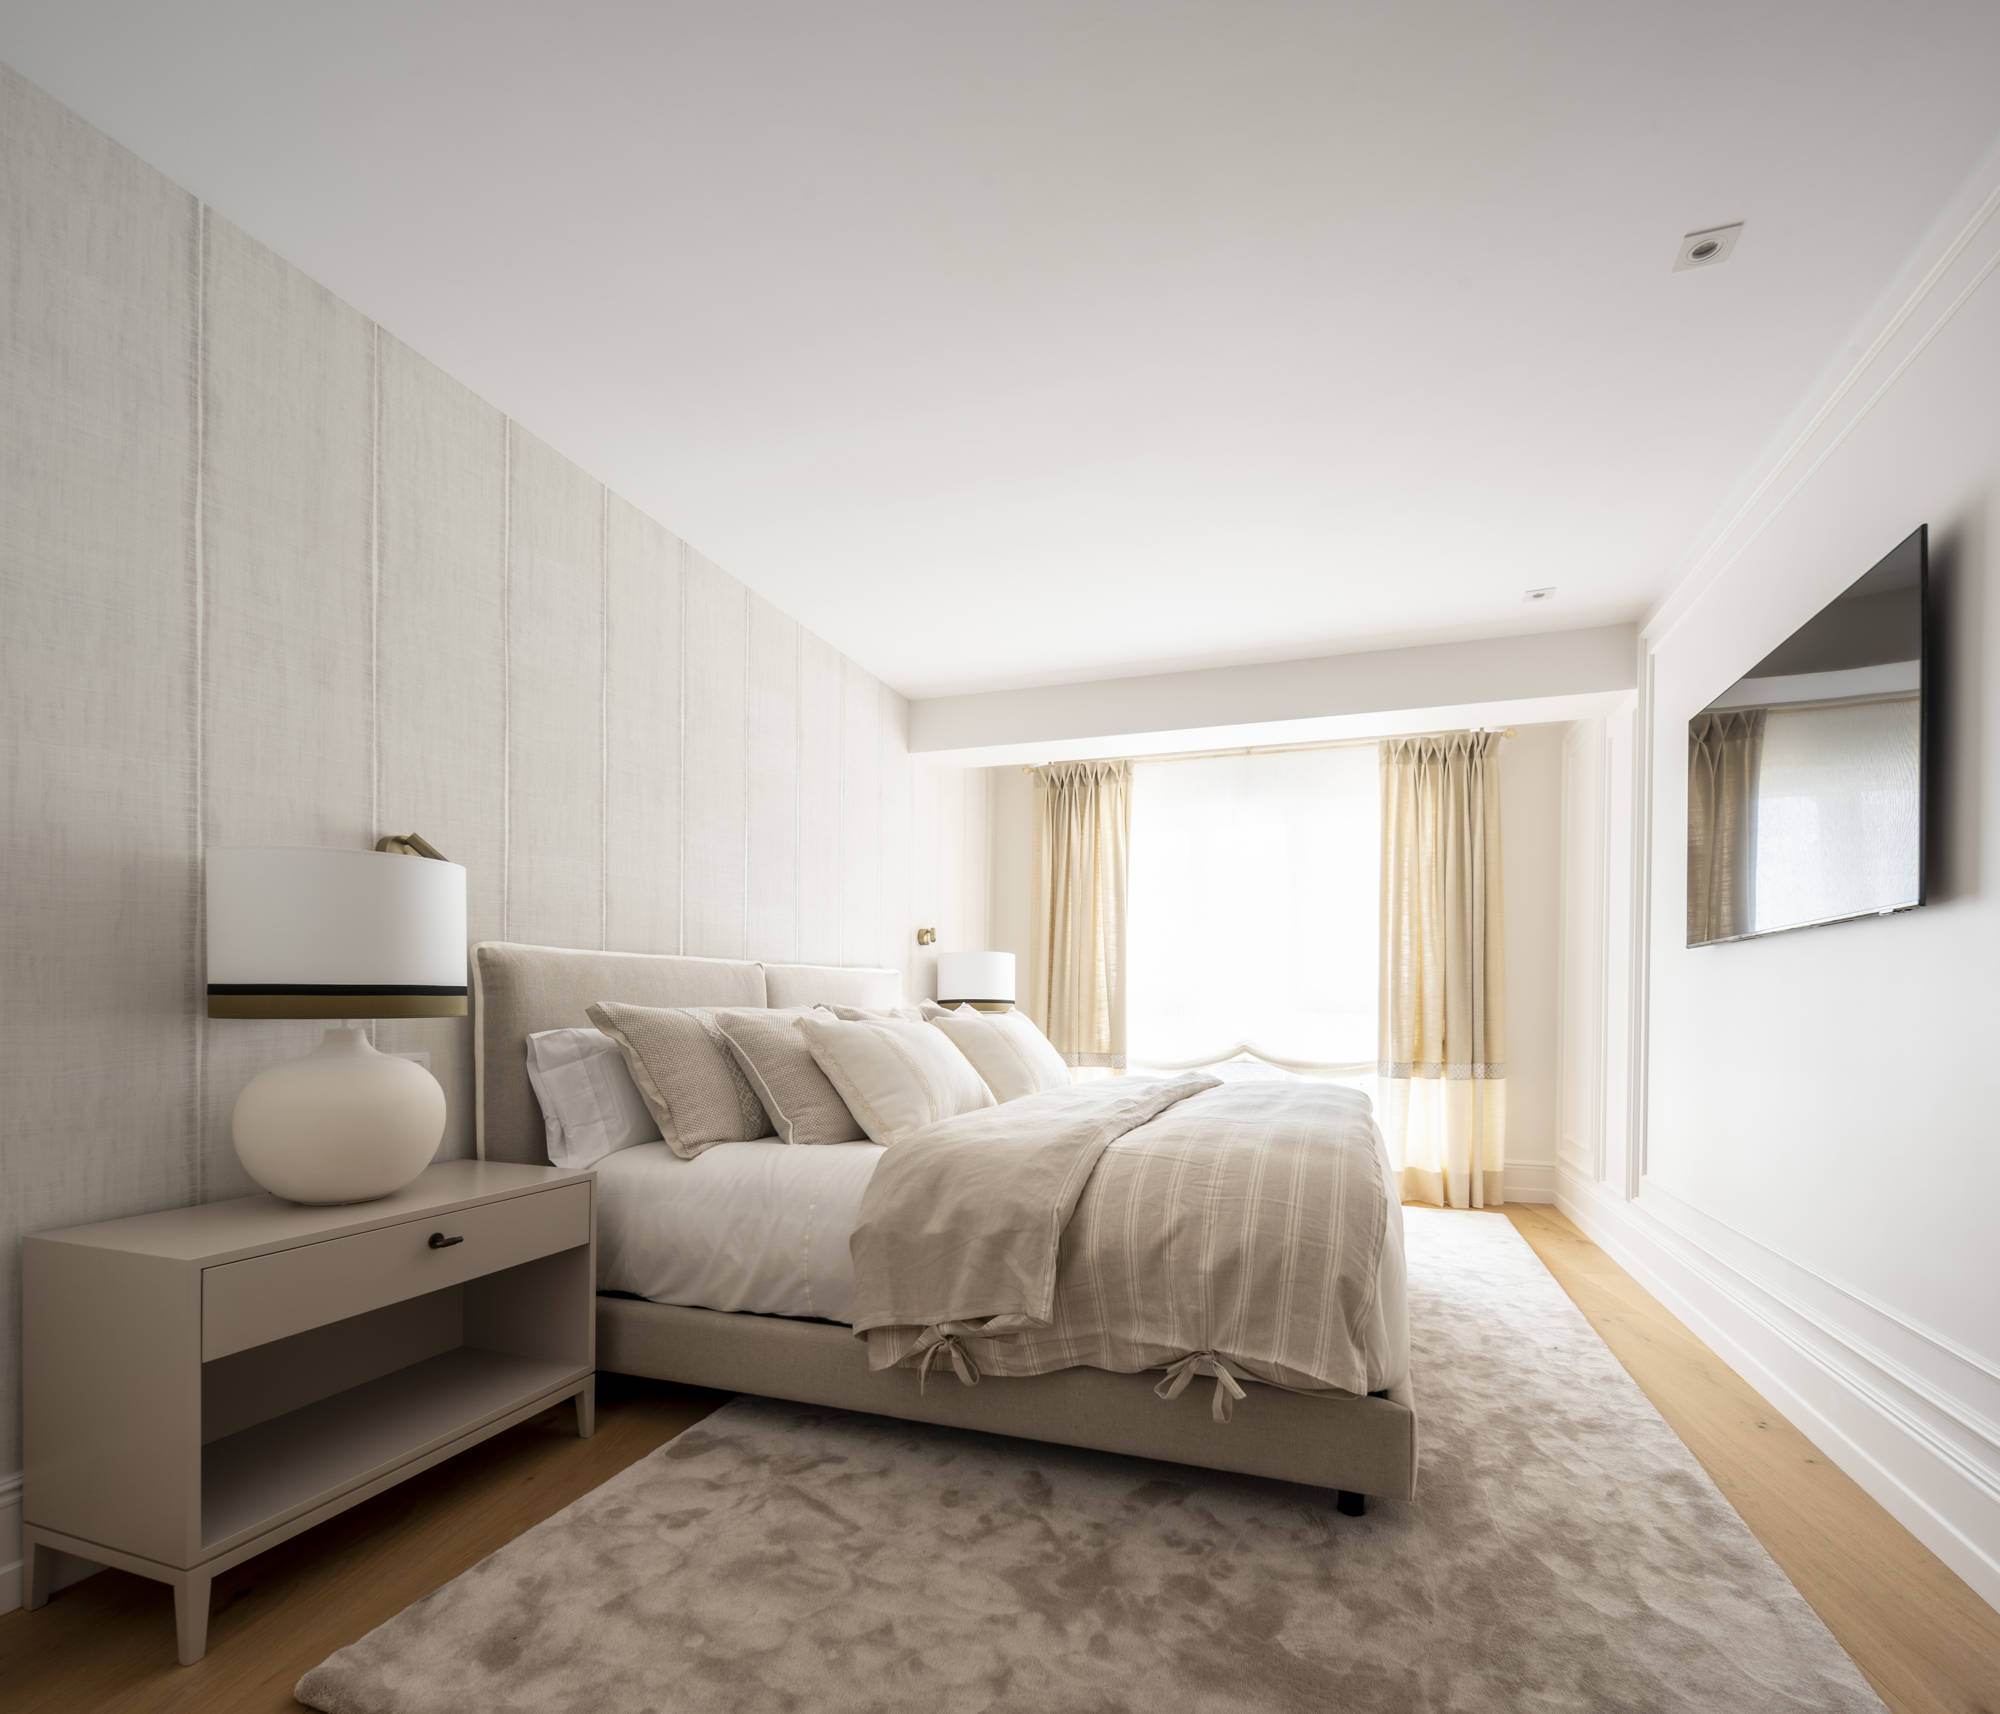 Dormitorio principal en tonos claros con alfombra, papel pintado y televisor.